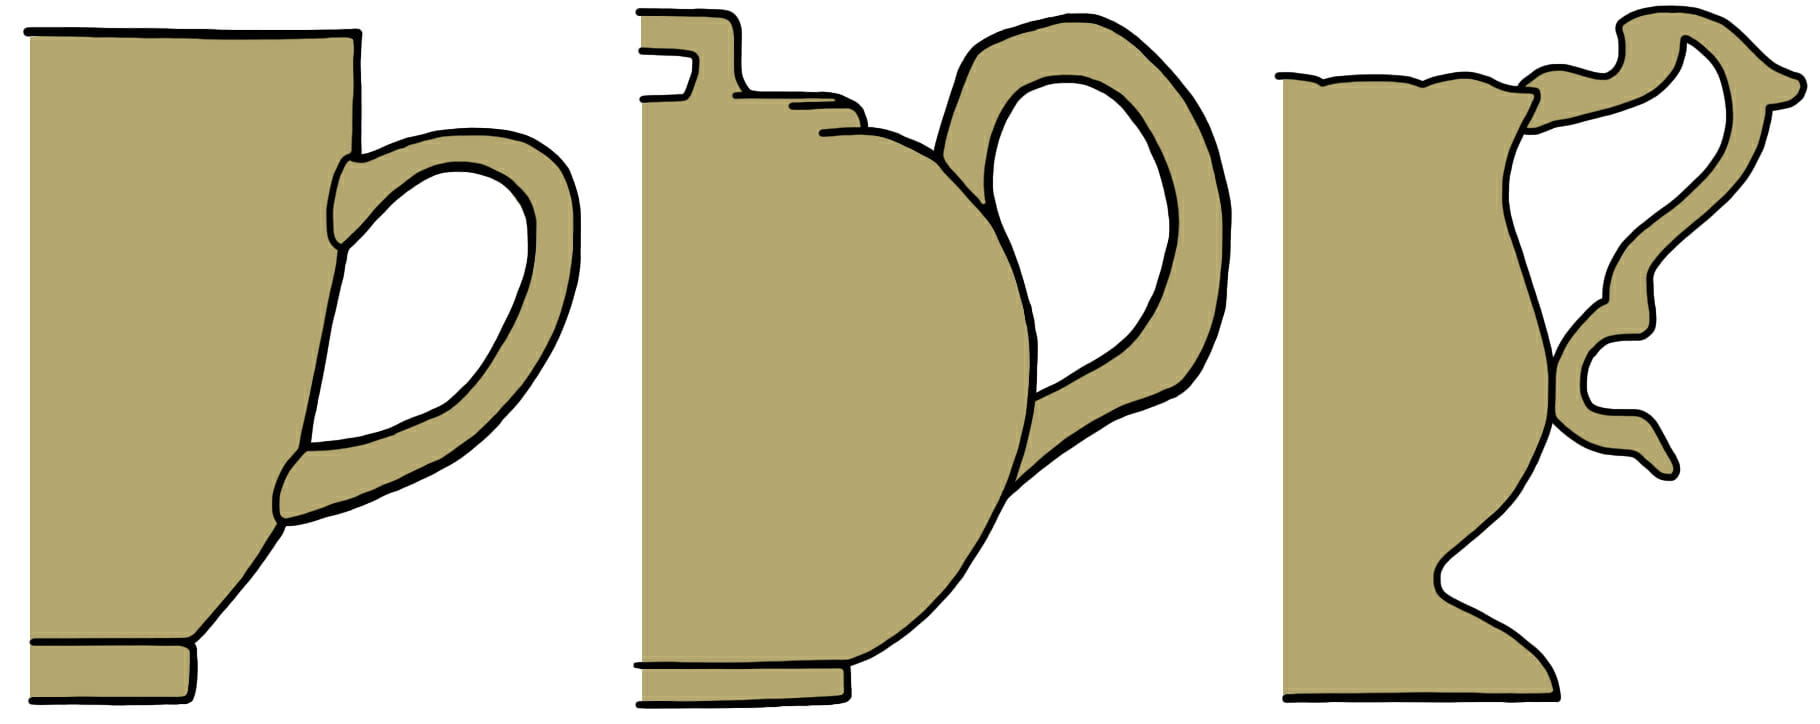 Antique teapot shapes